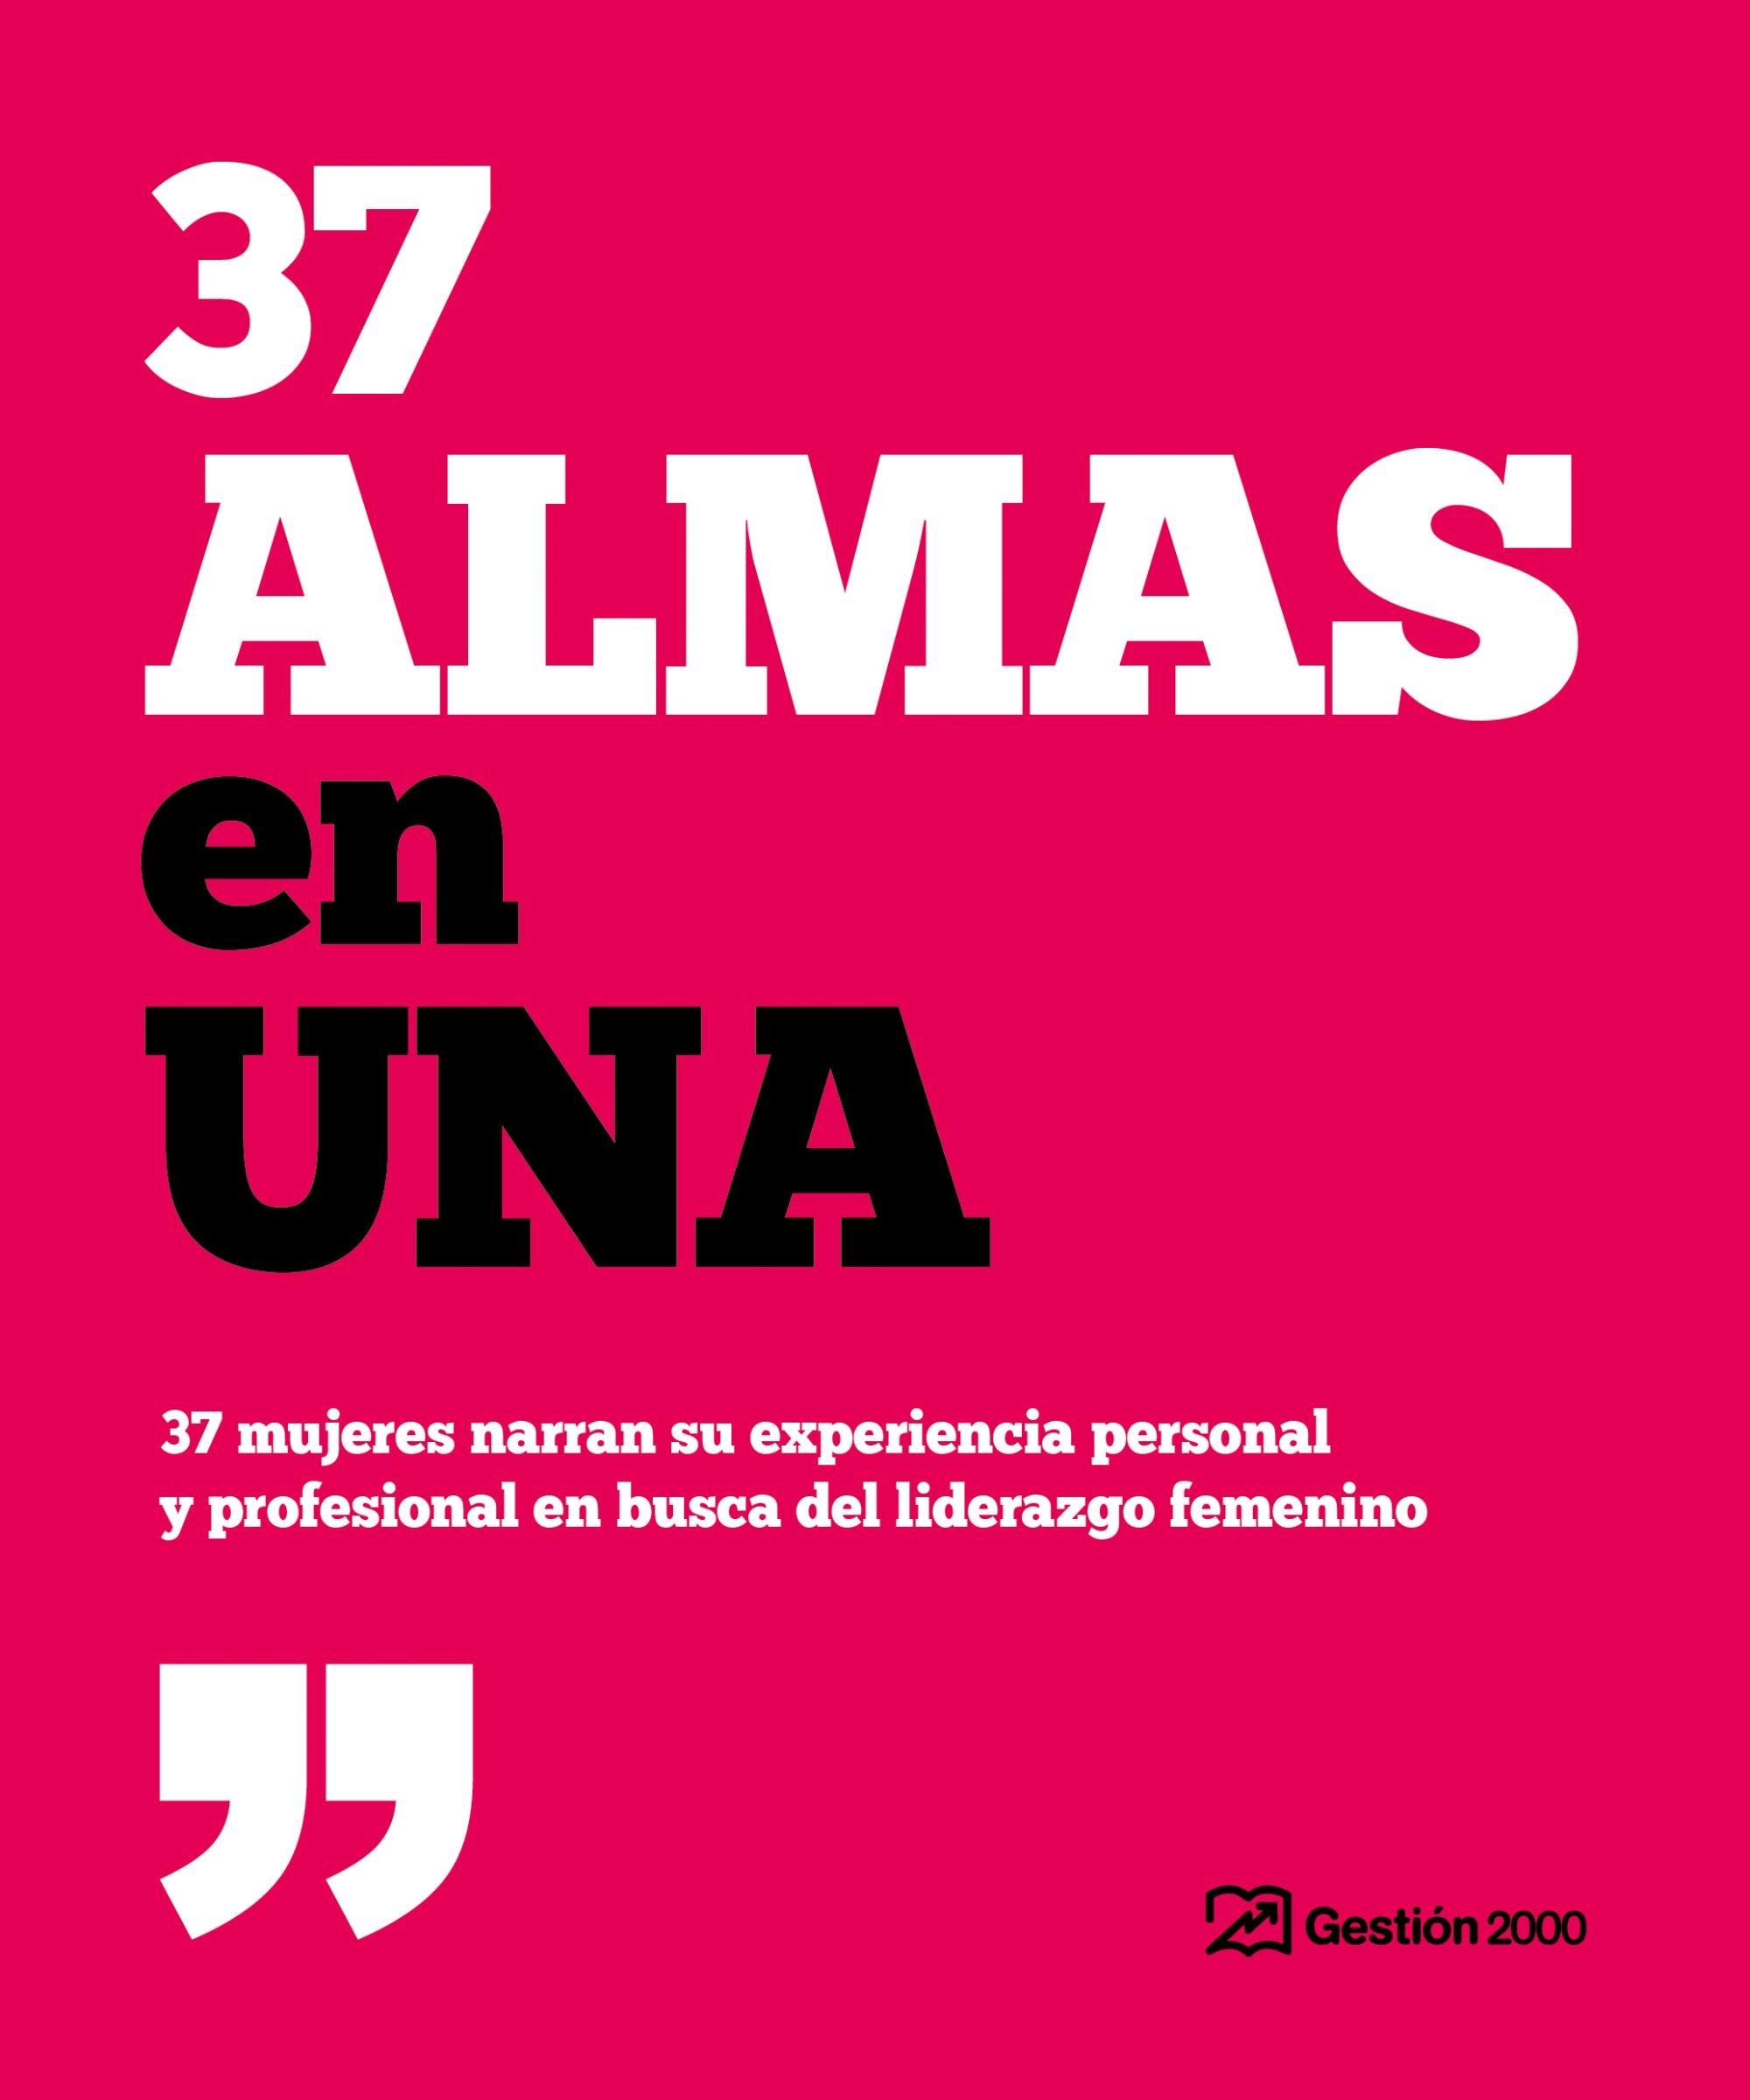 37 Almas en Una "37 Mujeres Narran su Experiencia Personal y Profesional en Busca del Lid". 